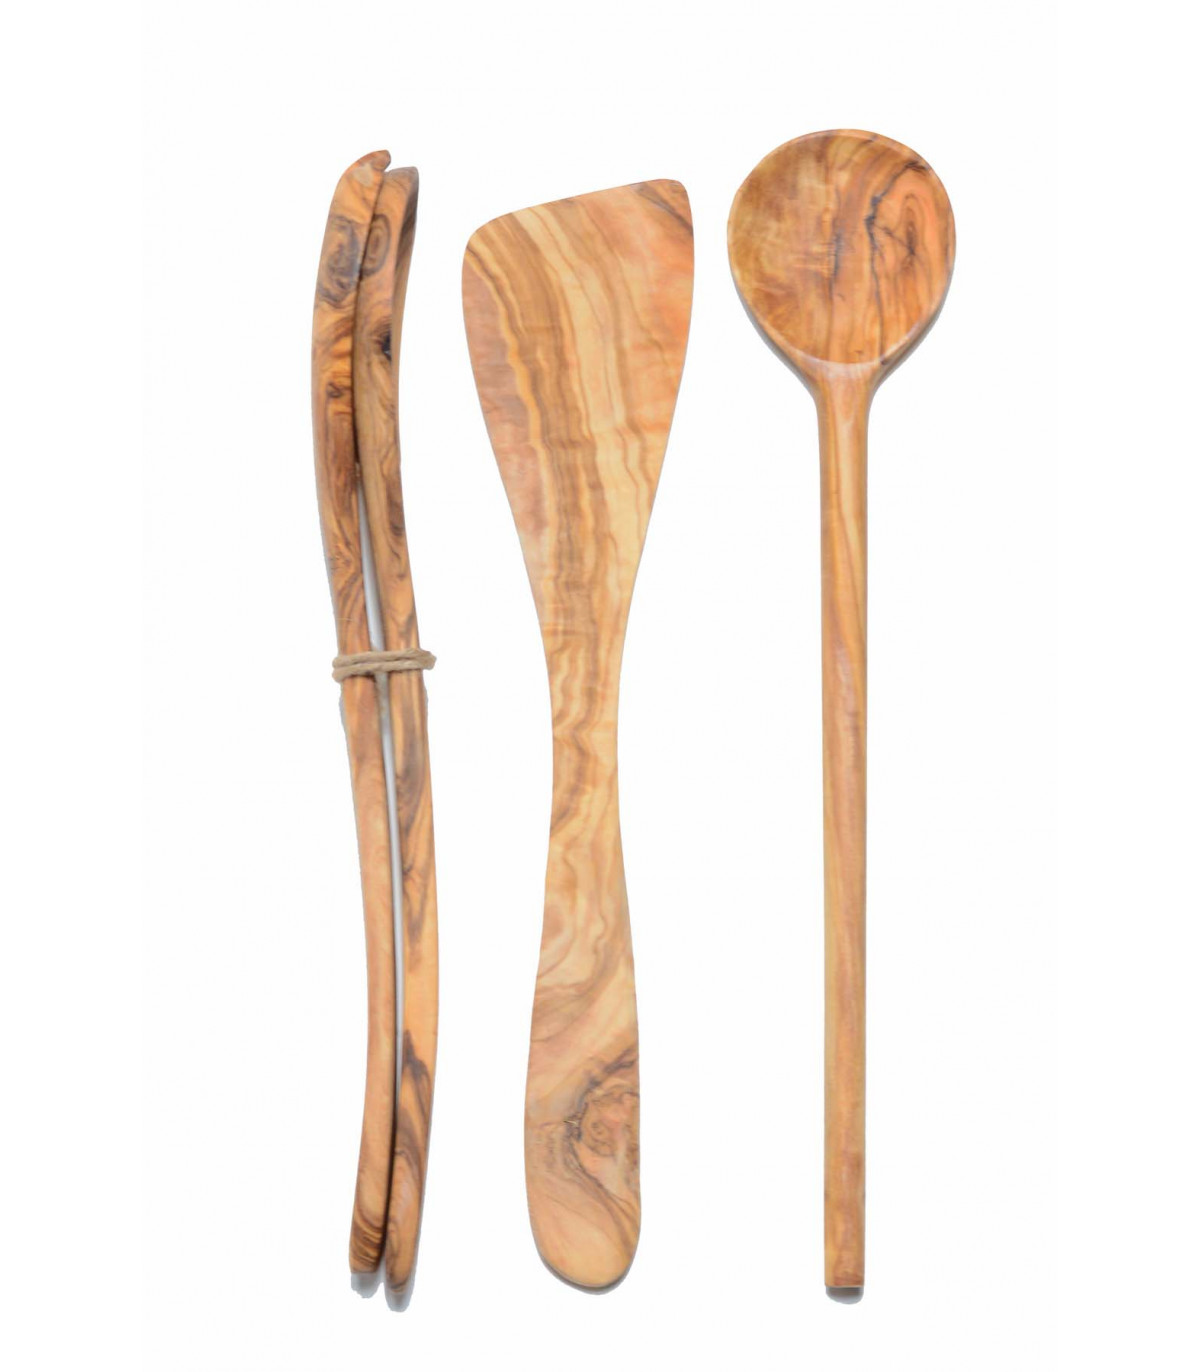 25cm 20cm Lot de spatules et cuillères de cuisine en bois Bois certifié FSC 30cm Fackelmann 31125 Set de 4 ustensiles de cuisine en bois 